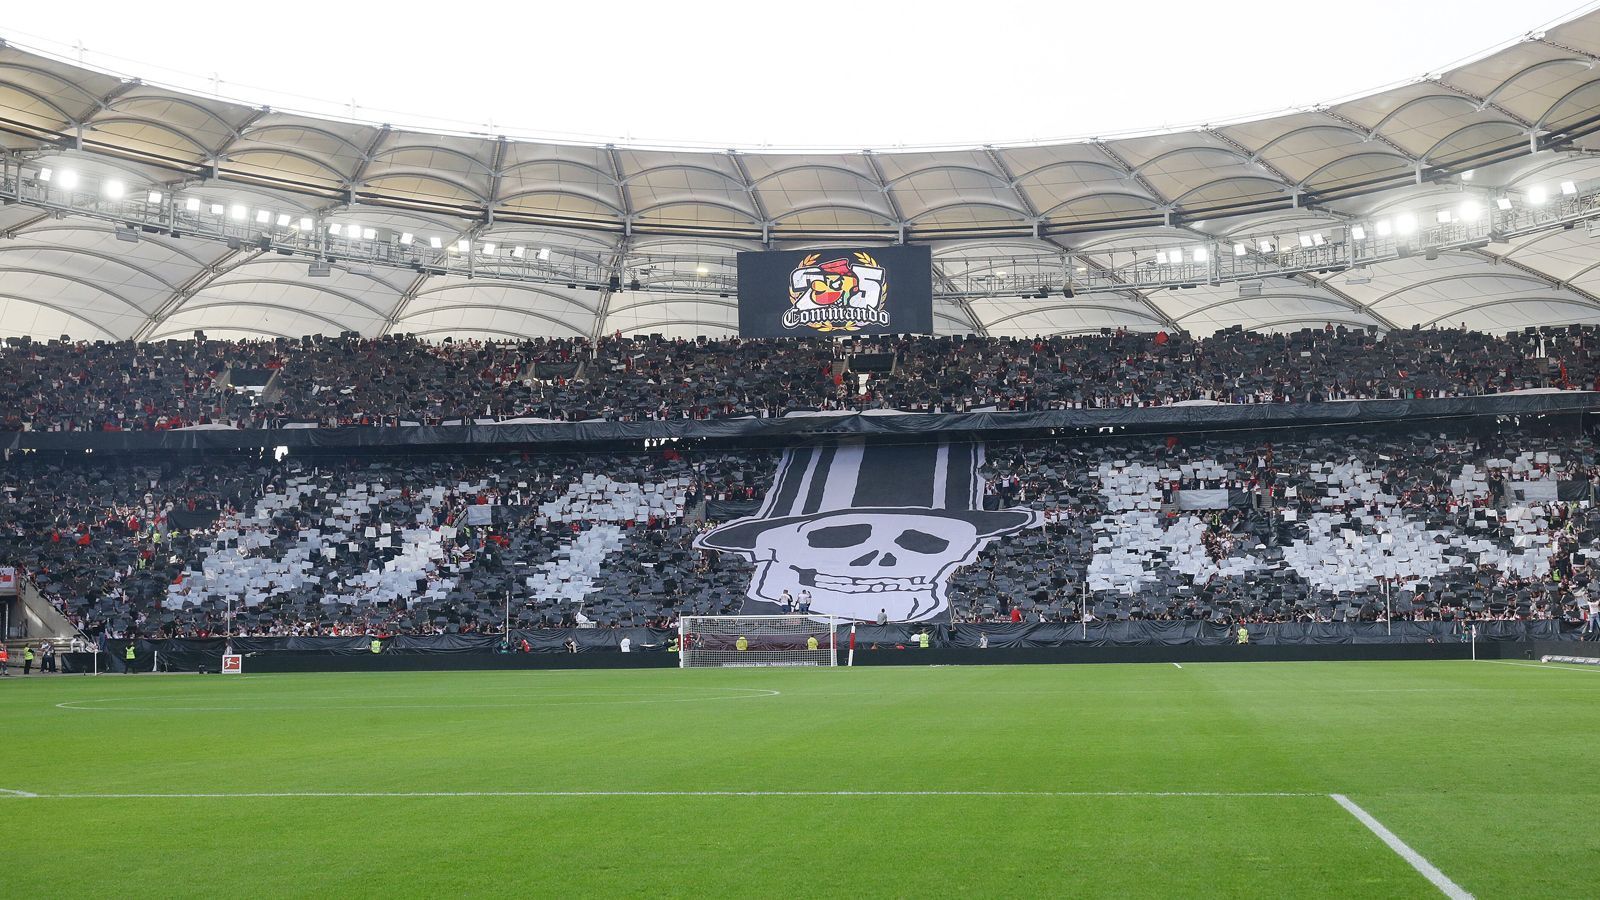 
                <strong>Commando Cannstatt heizt VfB Stuttgart ein</strong><br>
                ... Ob der abschließende Totenkopf wohl die Gäste aus Augsburg eingeschüchtert hat? Das Gesamtbild war jedenfalls atemberaubend. Der Last-Minute-Sieg des VfB für die Fans ebenfalls.
              